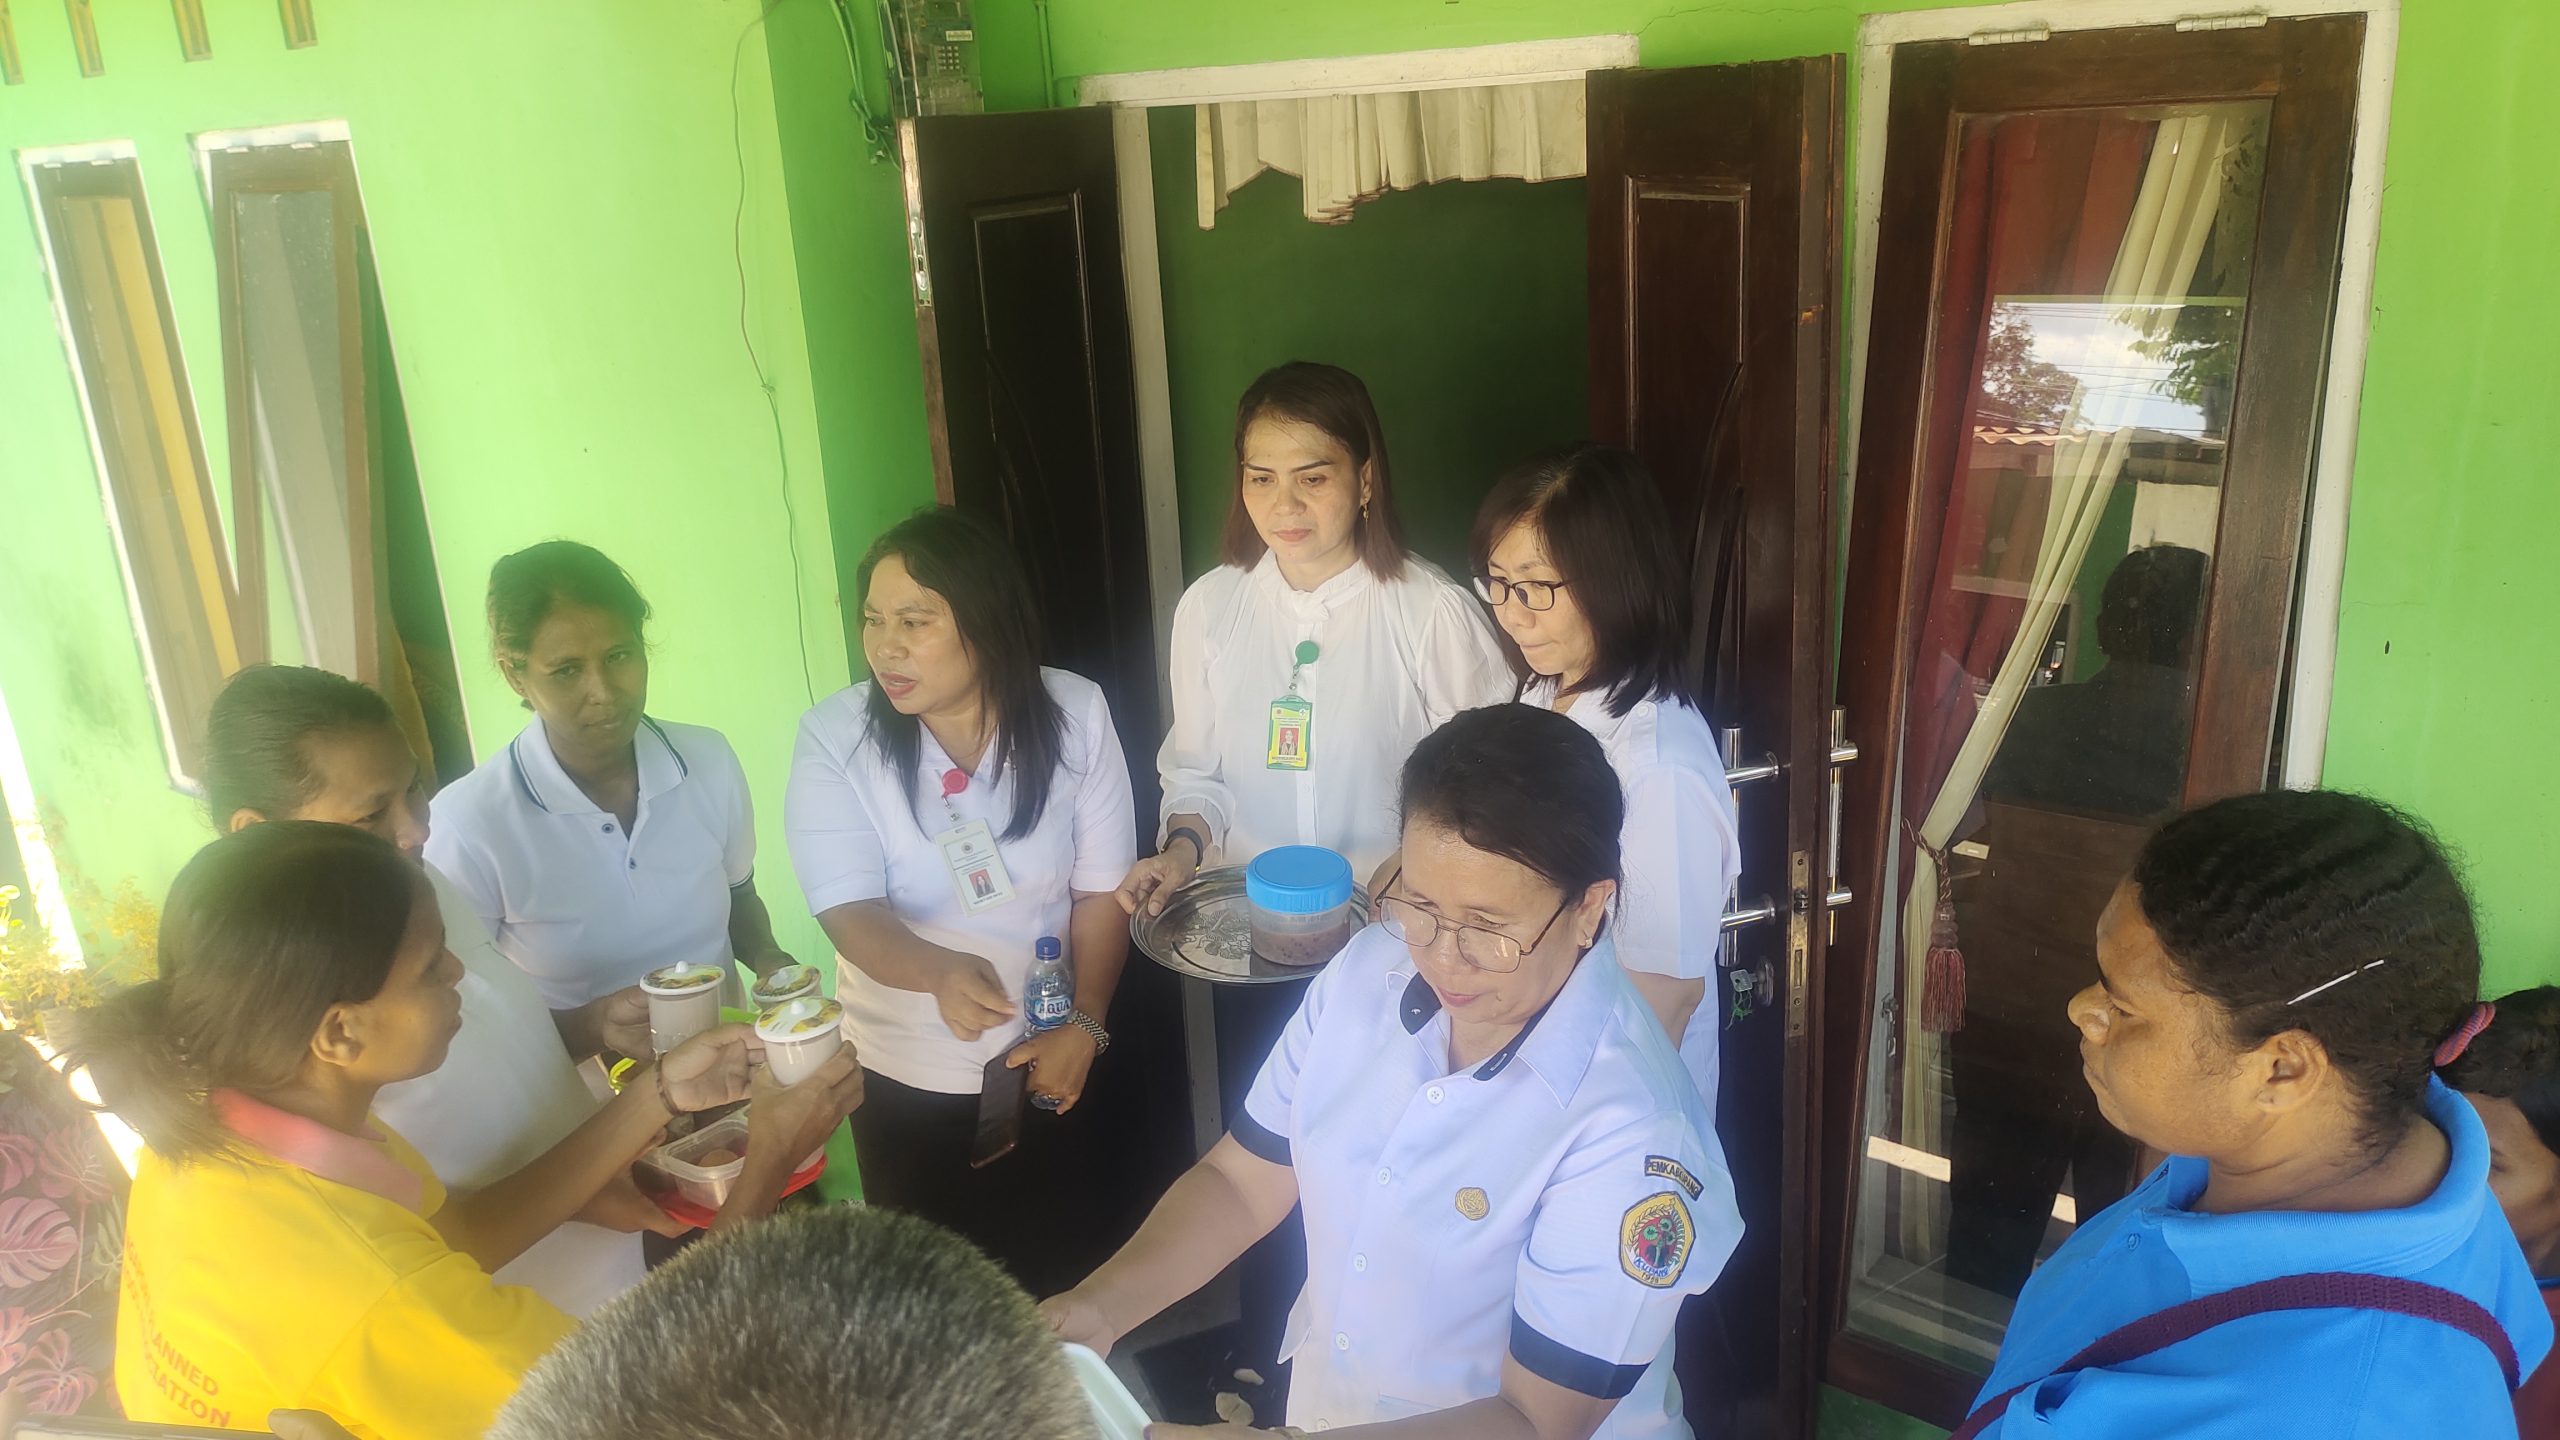 Dinas Kesehatan Kabupaten Kupang, Nusa Tenggara Timur memperkuat pemberian makanan tambahan (PMT) bagi ibu hamil yang mengalami Kekurangan Energi Kronis (KEK) dan Balita  untuk mencegah stunting.